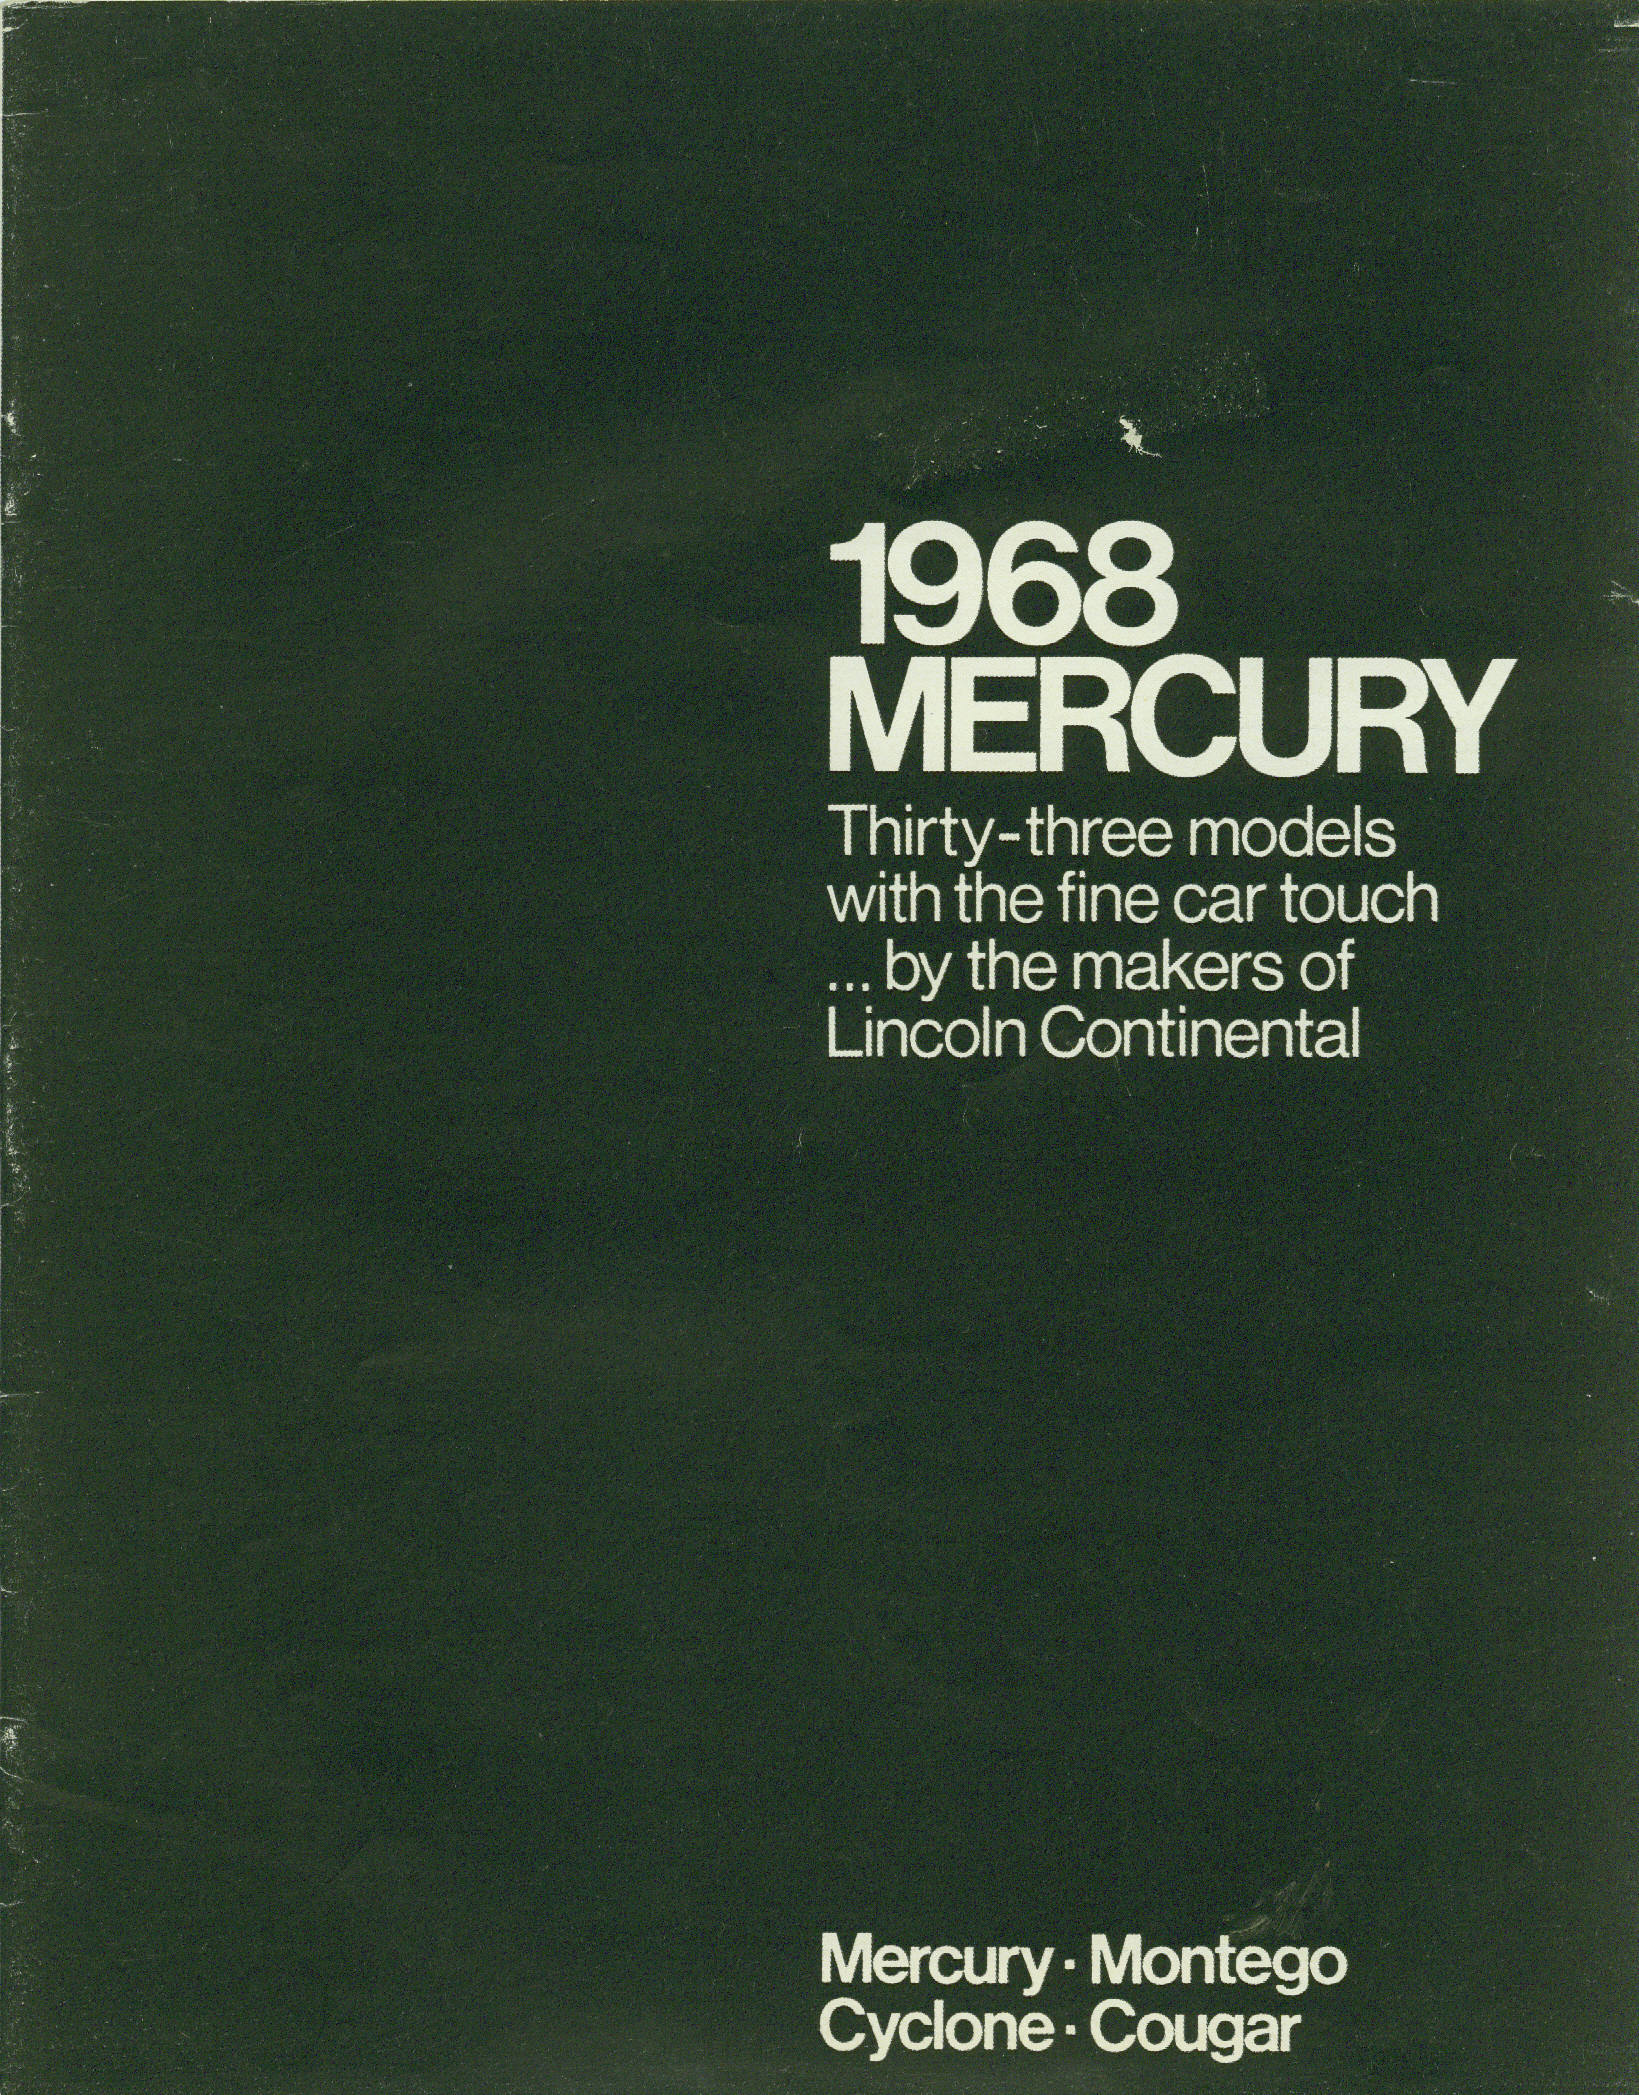 1968 Mercury Full Line